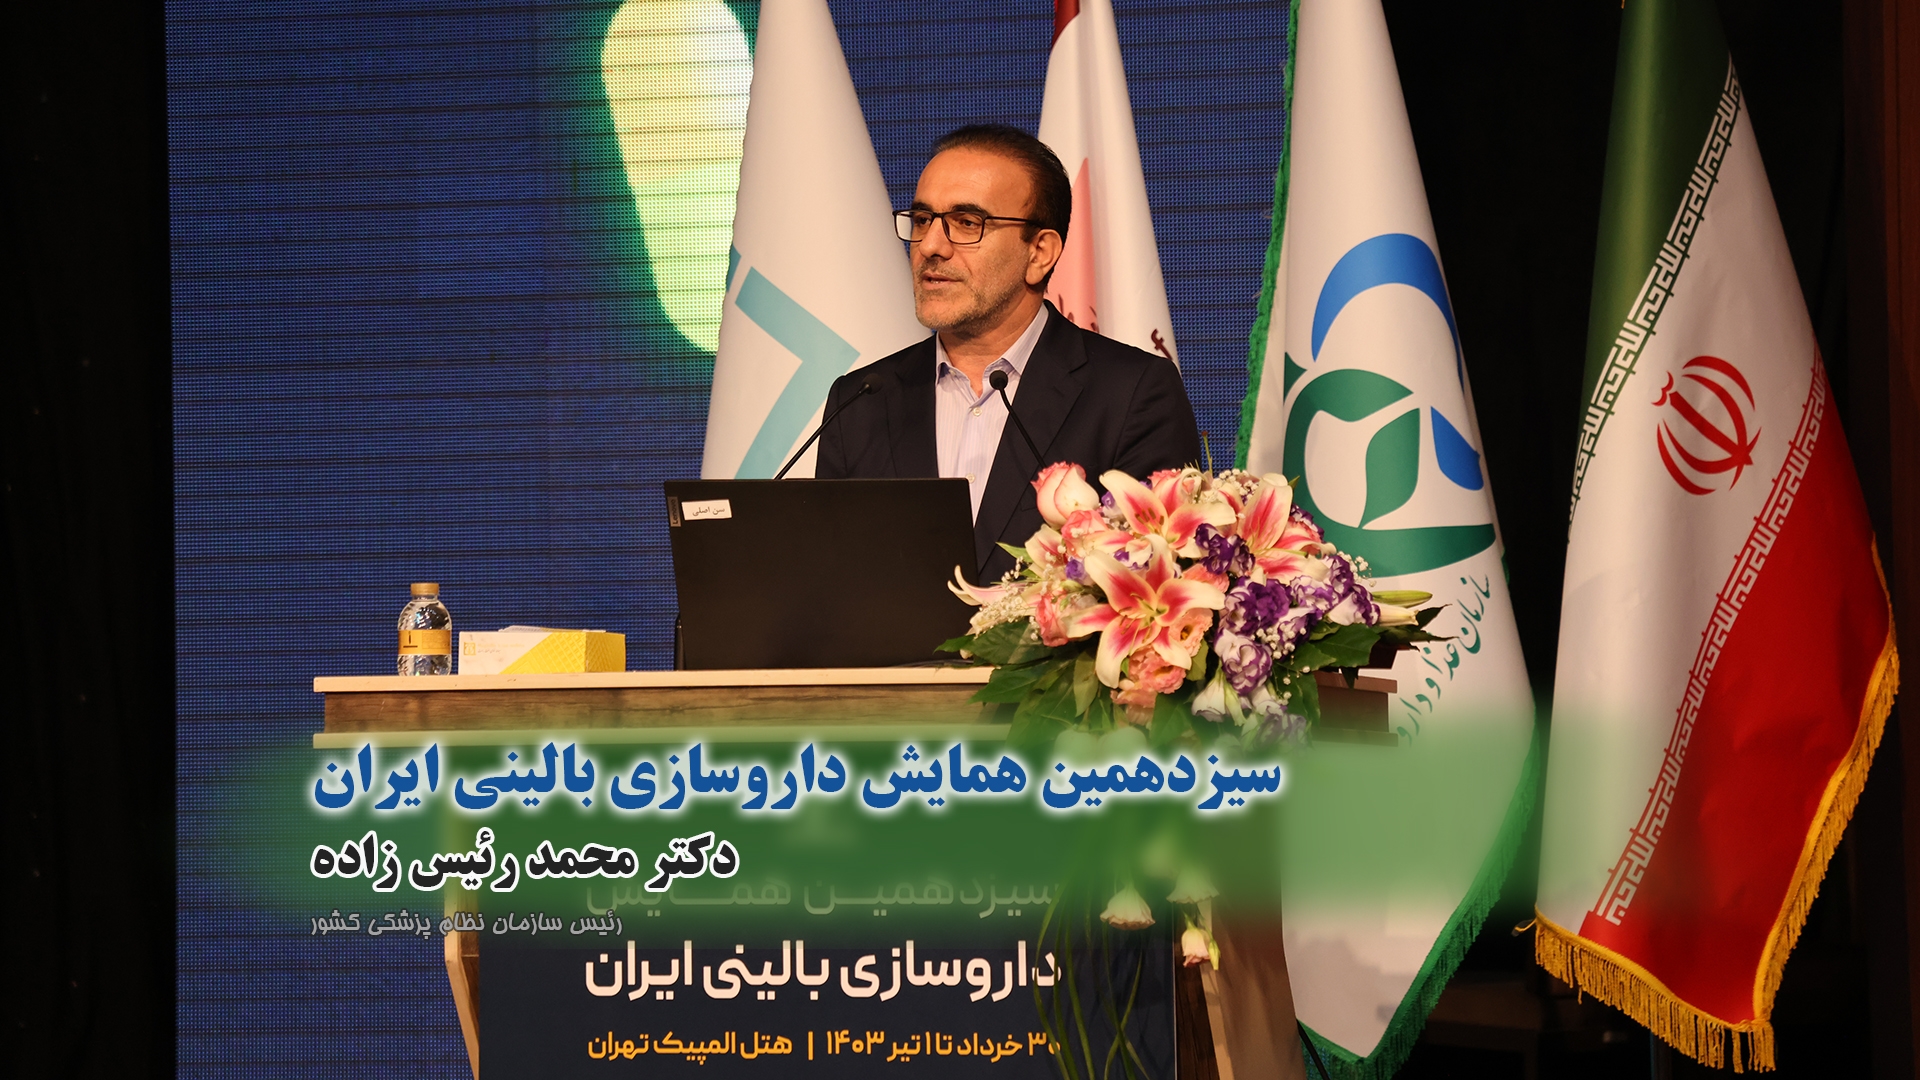 سیزدهمین همایش داروسازی بالینی ایران